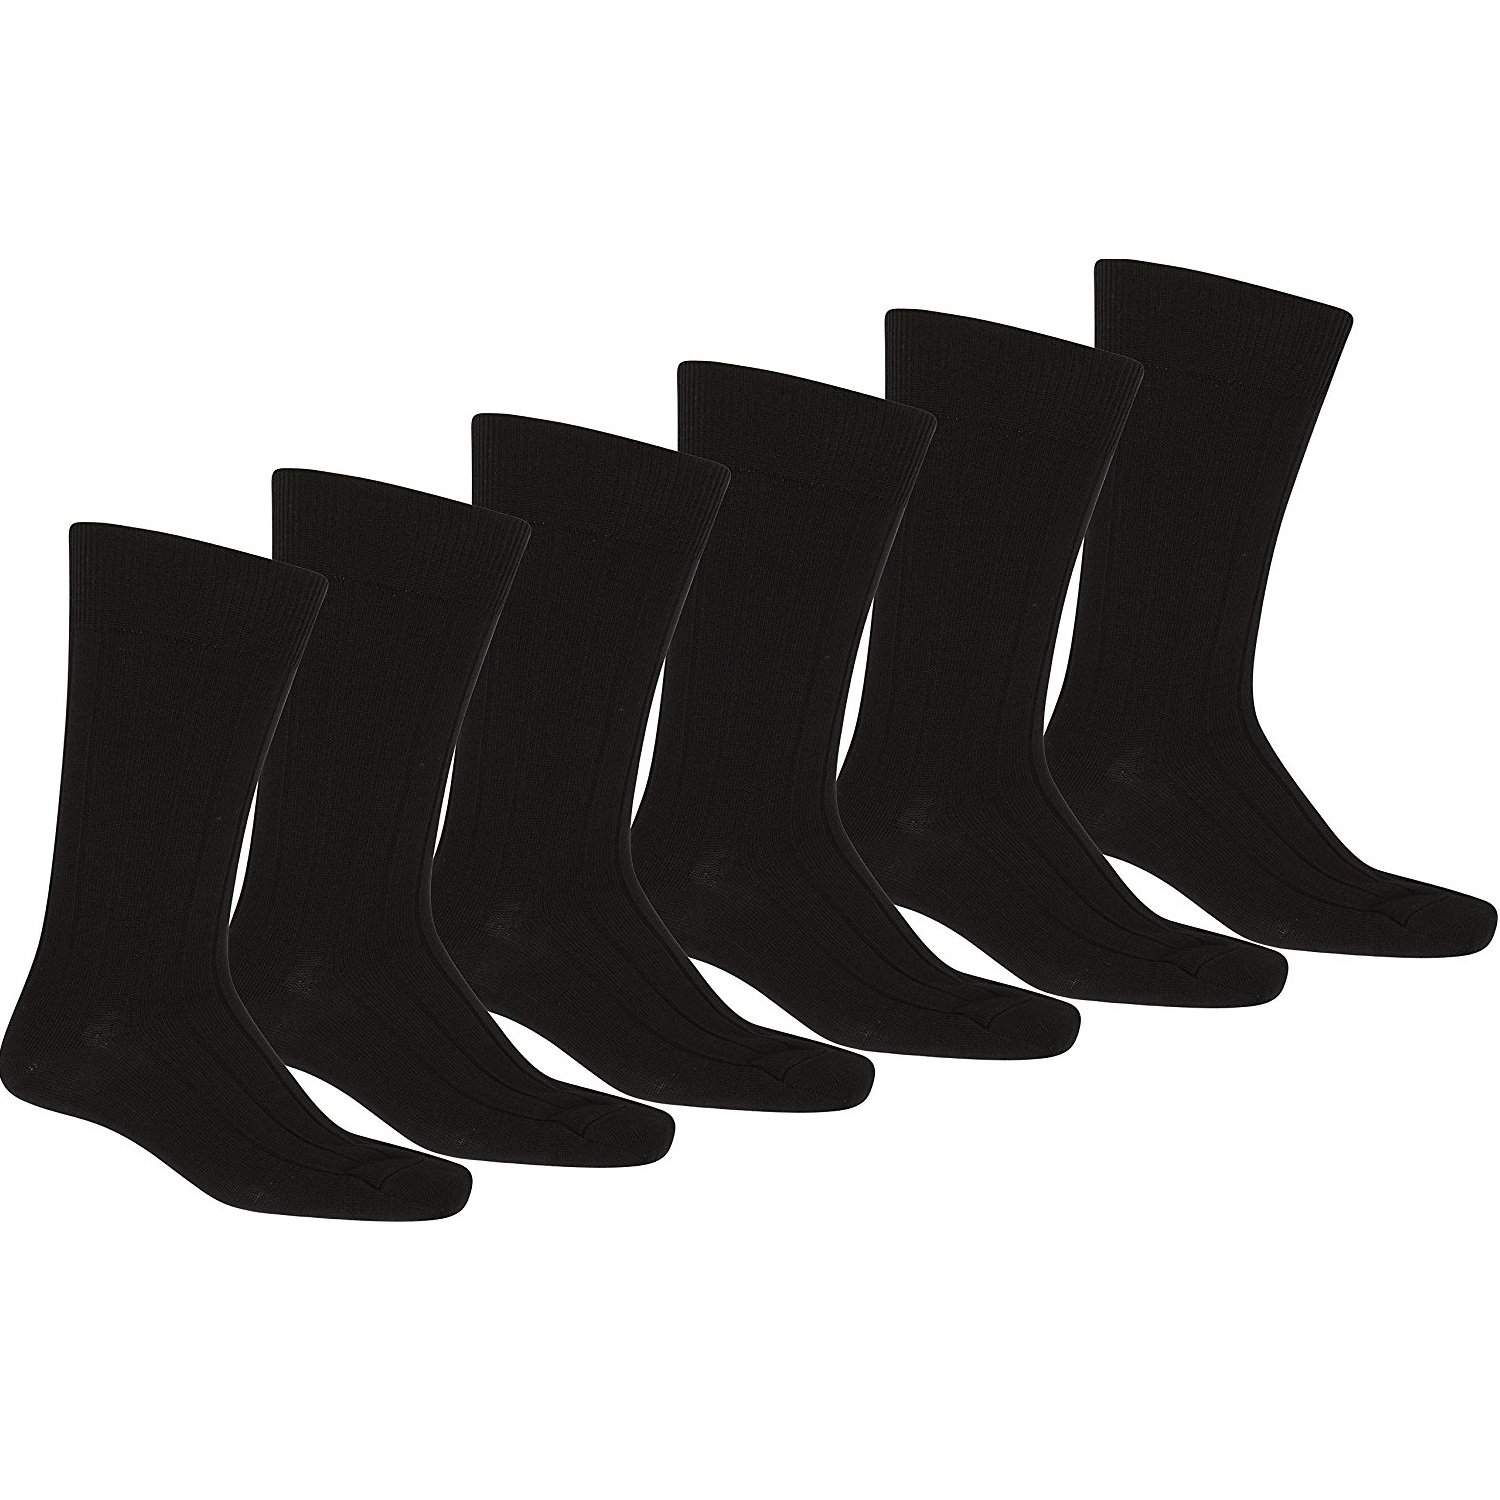 15 Pack of Mechaly Men Black Solid Plain Dress Socks